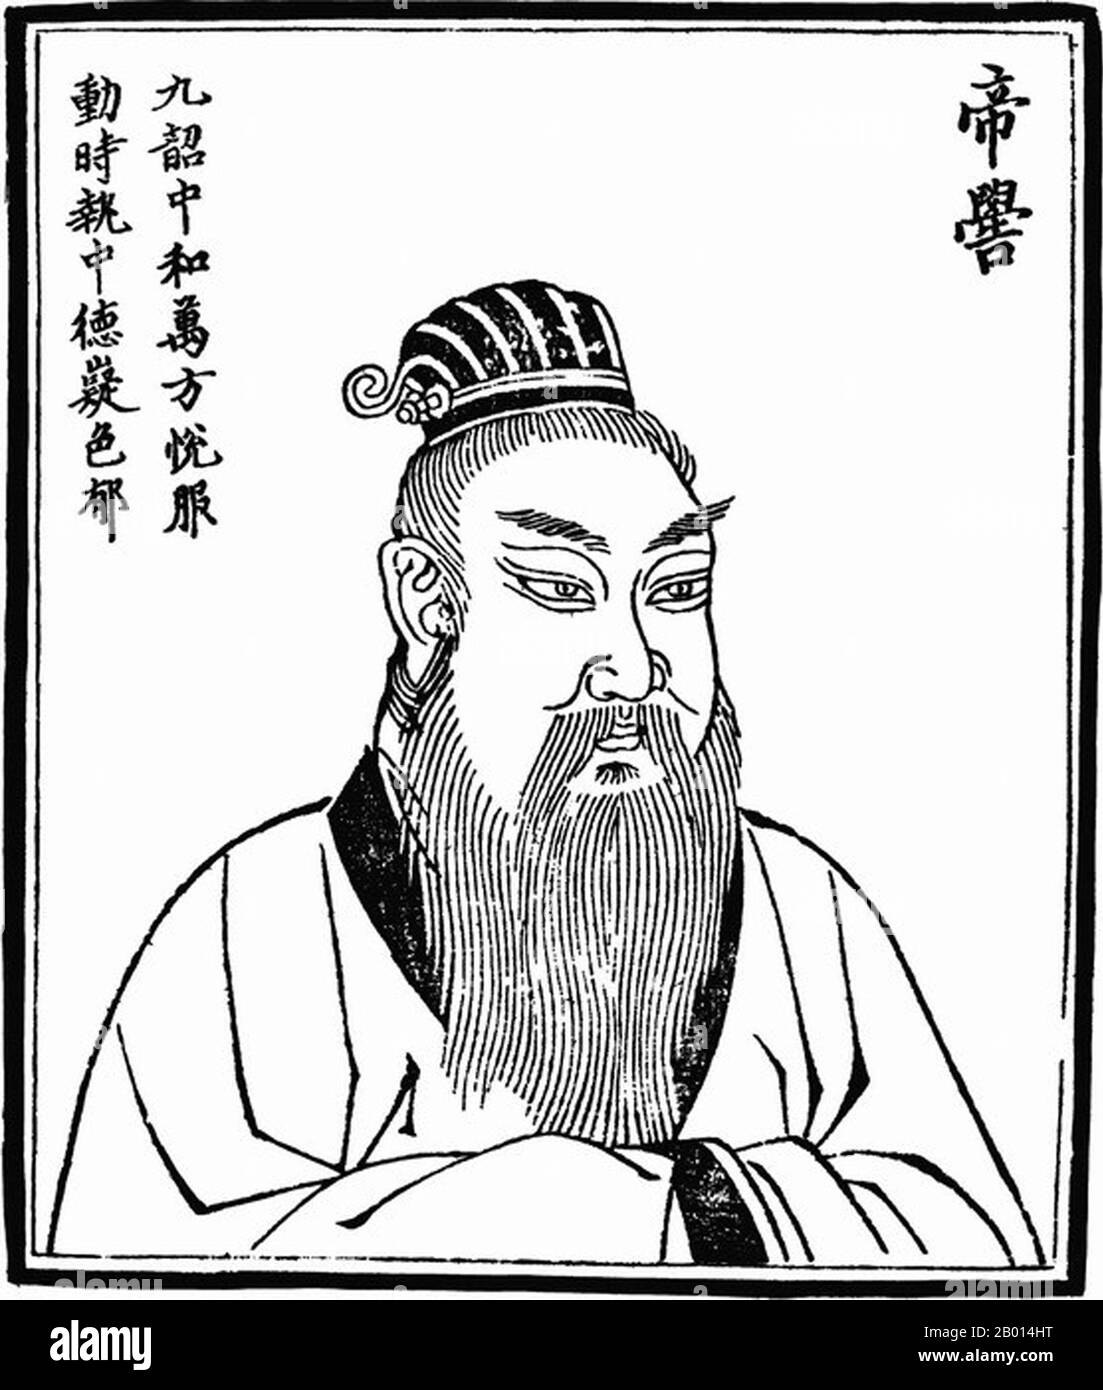 China: Kaiser Ku (c. 2436-2366 v. Chr.), dem dritten der legendären „fünf Kaiser“. Abbildung, c. 1498. Kaiser Ku, auch bekannt als Di Ku, Gaoxin oder Gaoxin Shi, war ein legendärer Herrscher und Nachkomme des Gelben Imperators. Einige der nachfolgenden Dynastien behaupten, ihm seien Ahnenbande zugesichert, ob er jedoch eine halbhistorische oder fantastische Figur ist, wird diskutiert. Er nannte sich selbst "Gott-Kaiser", als er aufstieg, und es wurde gesagt, dass er im Frühling und Sommer mit einem Drachen und im Herbst und Winter mit einem Pferd gereist war. Er soll auch mehrere Musikinstrumente und Lieder erfunden haben. Stockfoto